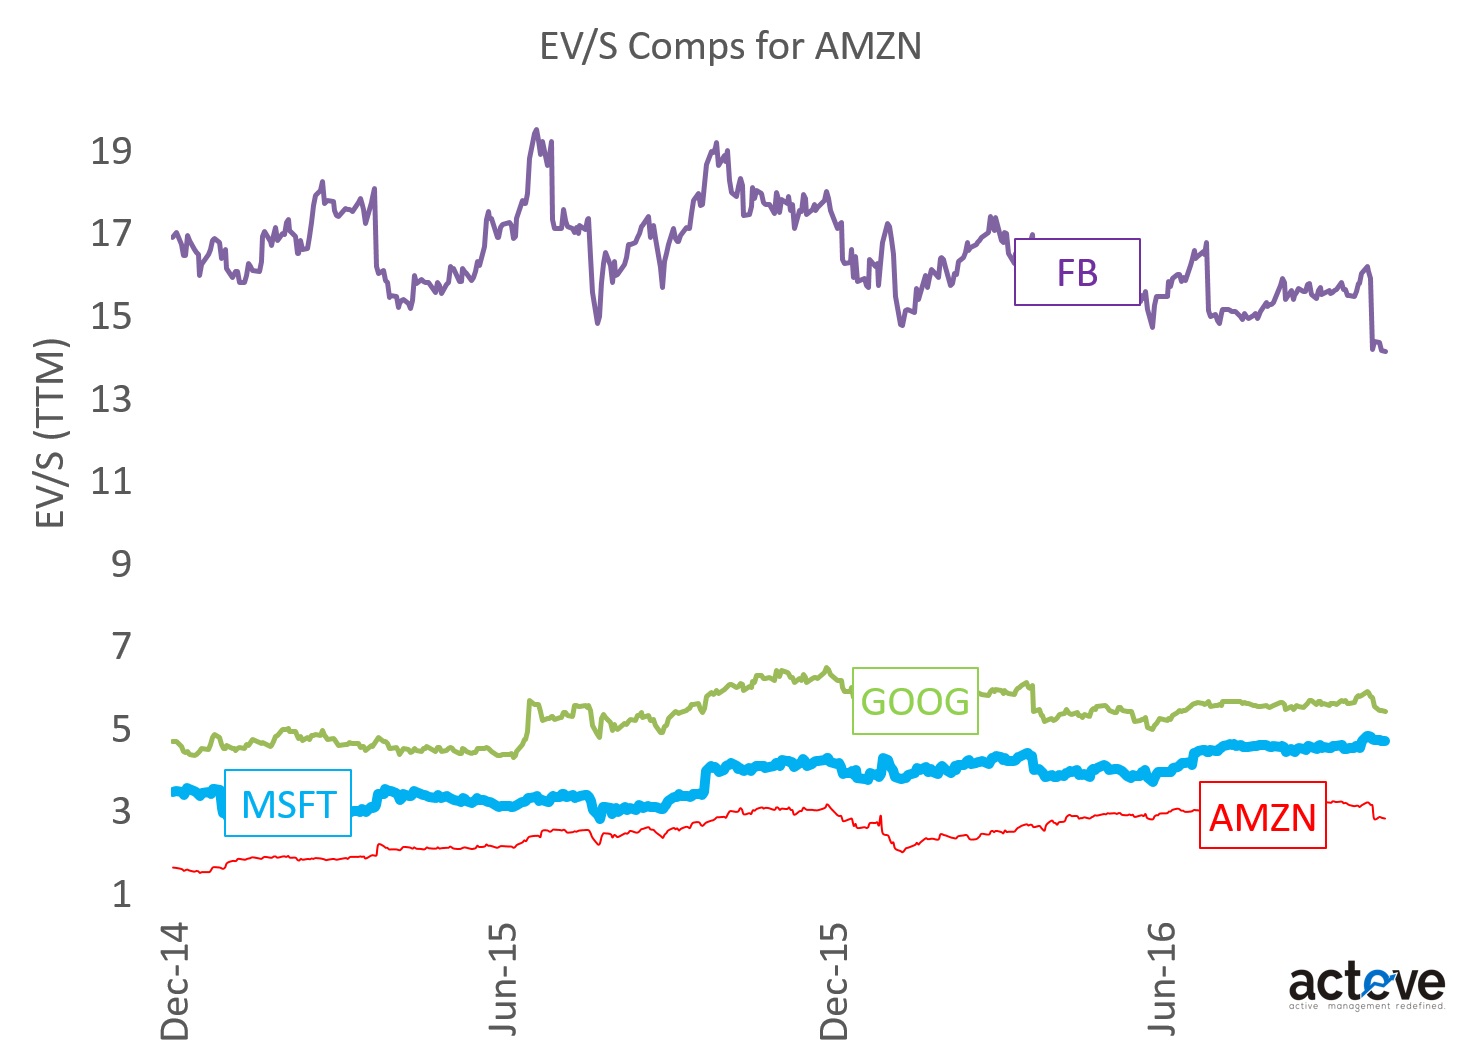 AMZN EV/S Comps